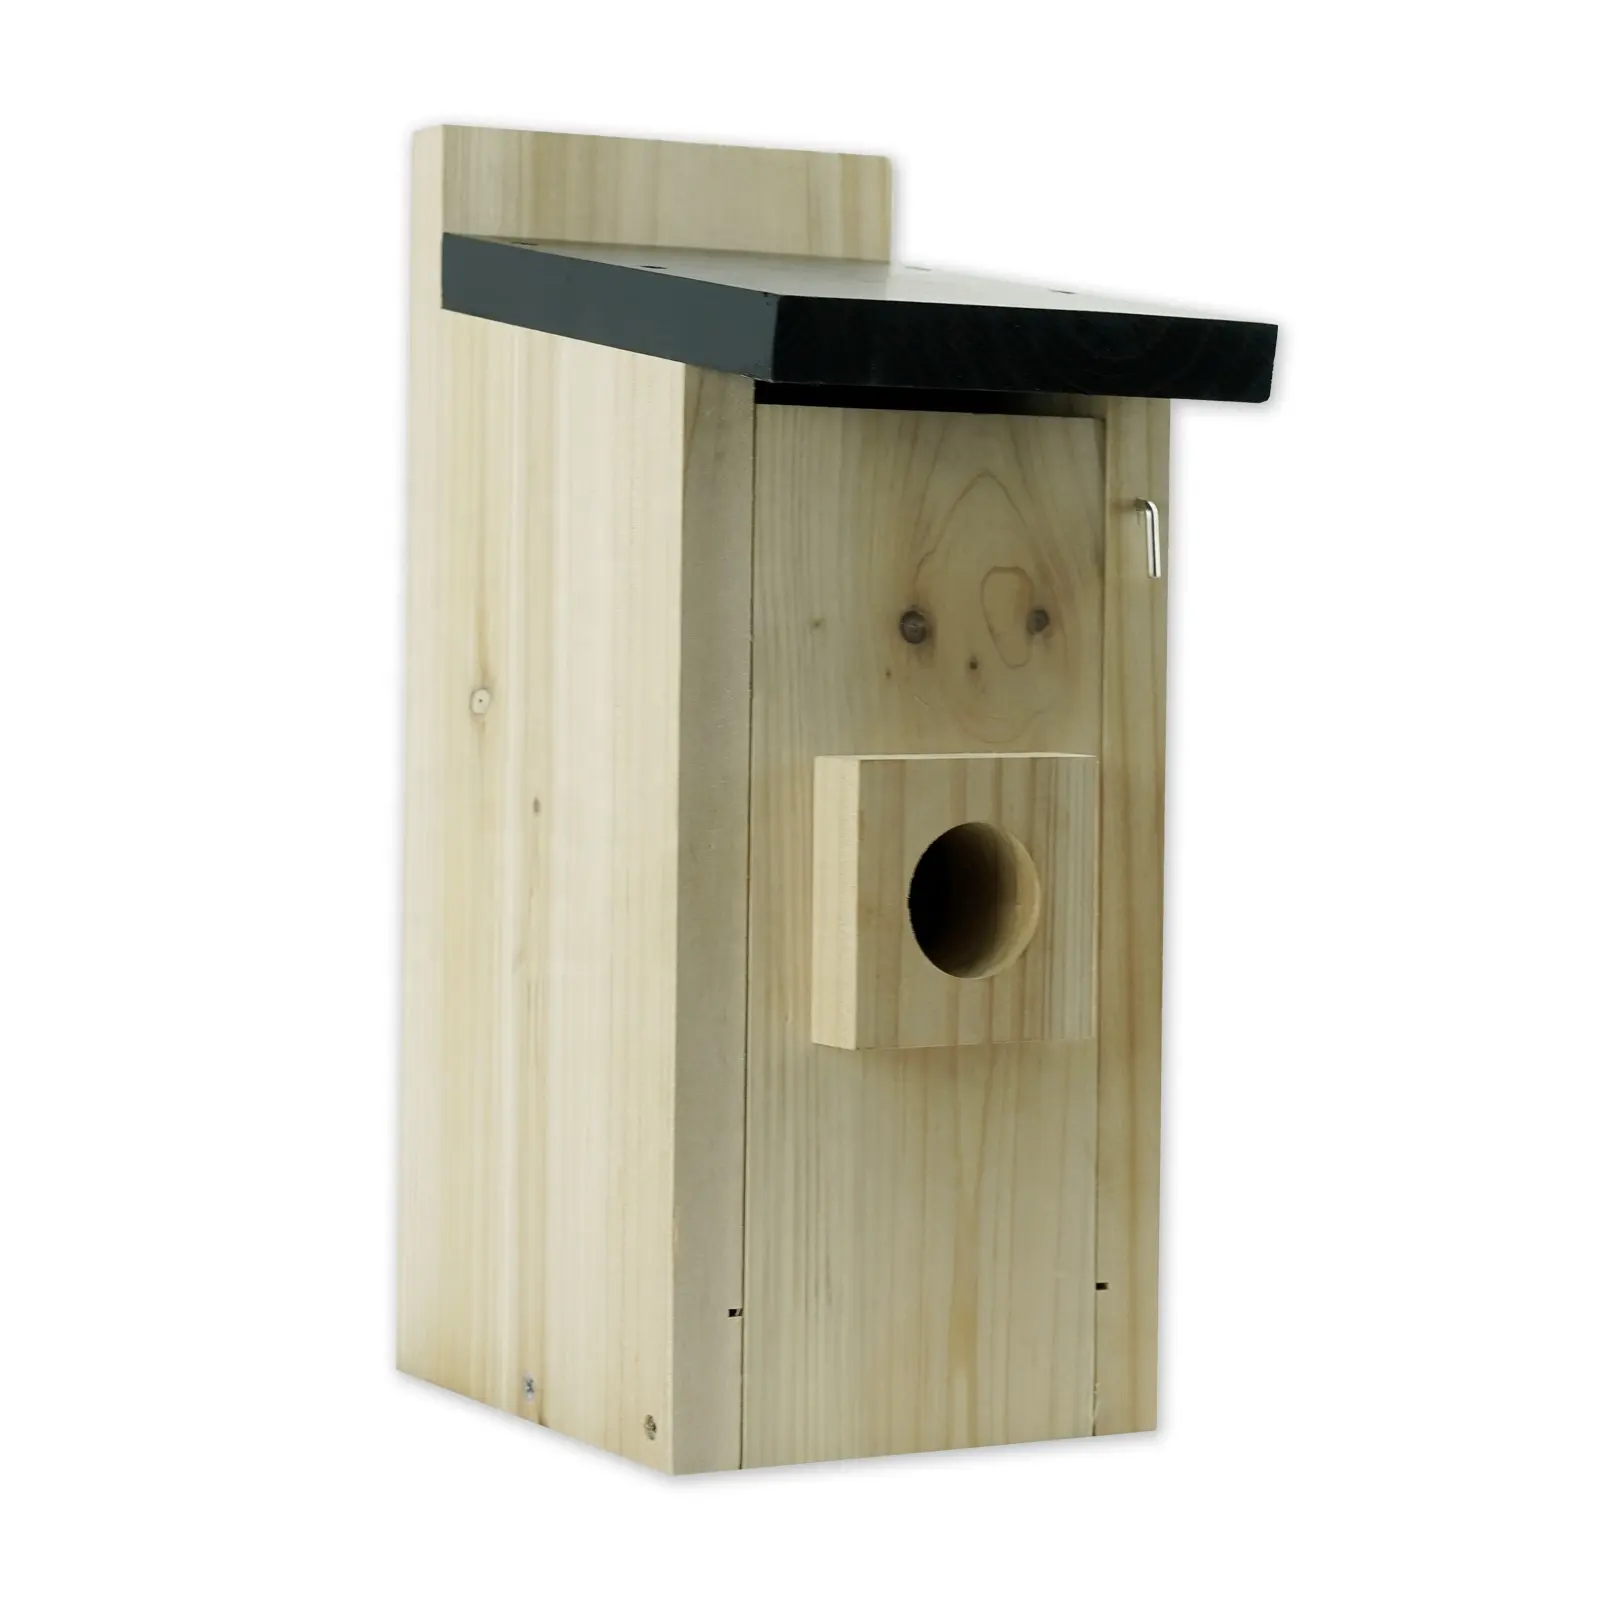 Yüksek kaliteli açık su geçirmez ahşap kuş kafesi kuş evi, açık havada diy kuş yuva kutusu asılı ağaç ahşap birdhouse